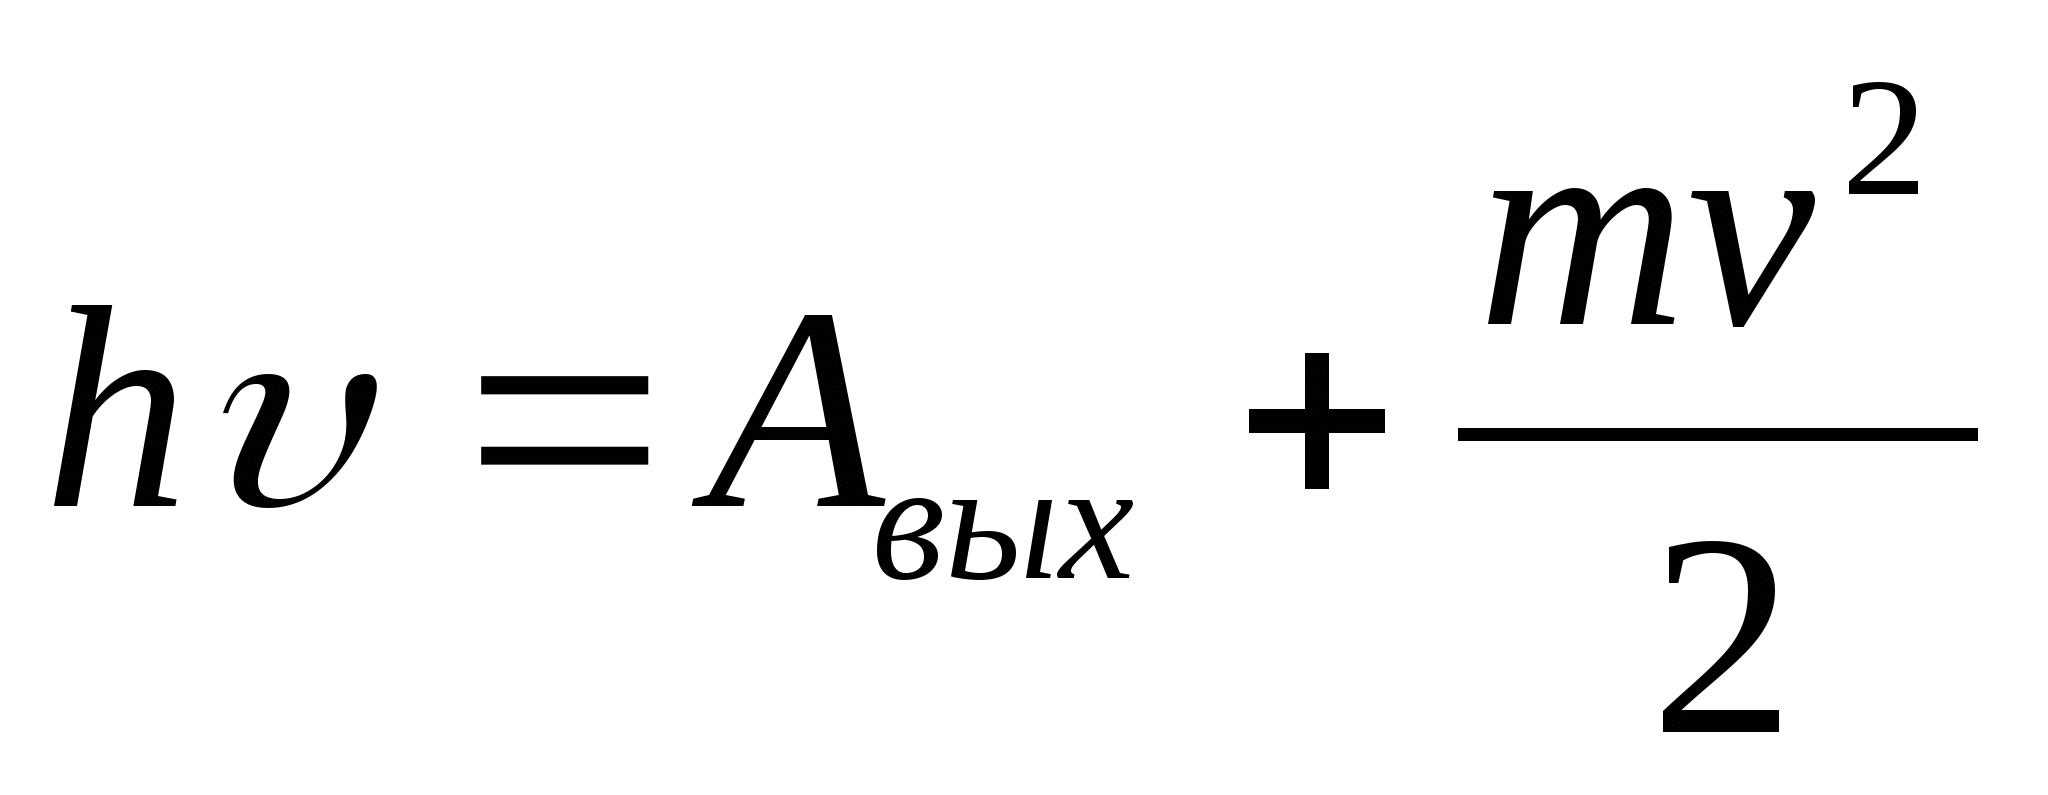 Урок - практикум Решение задач на применение уравнения Эйнштейна